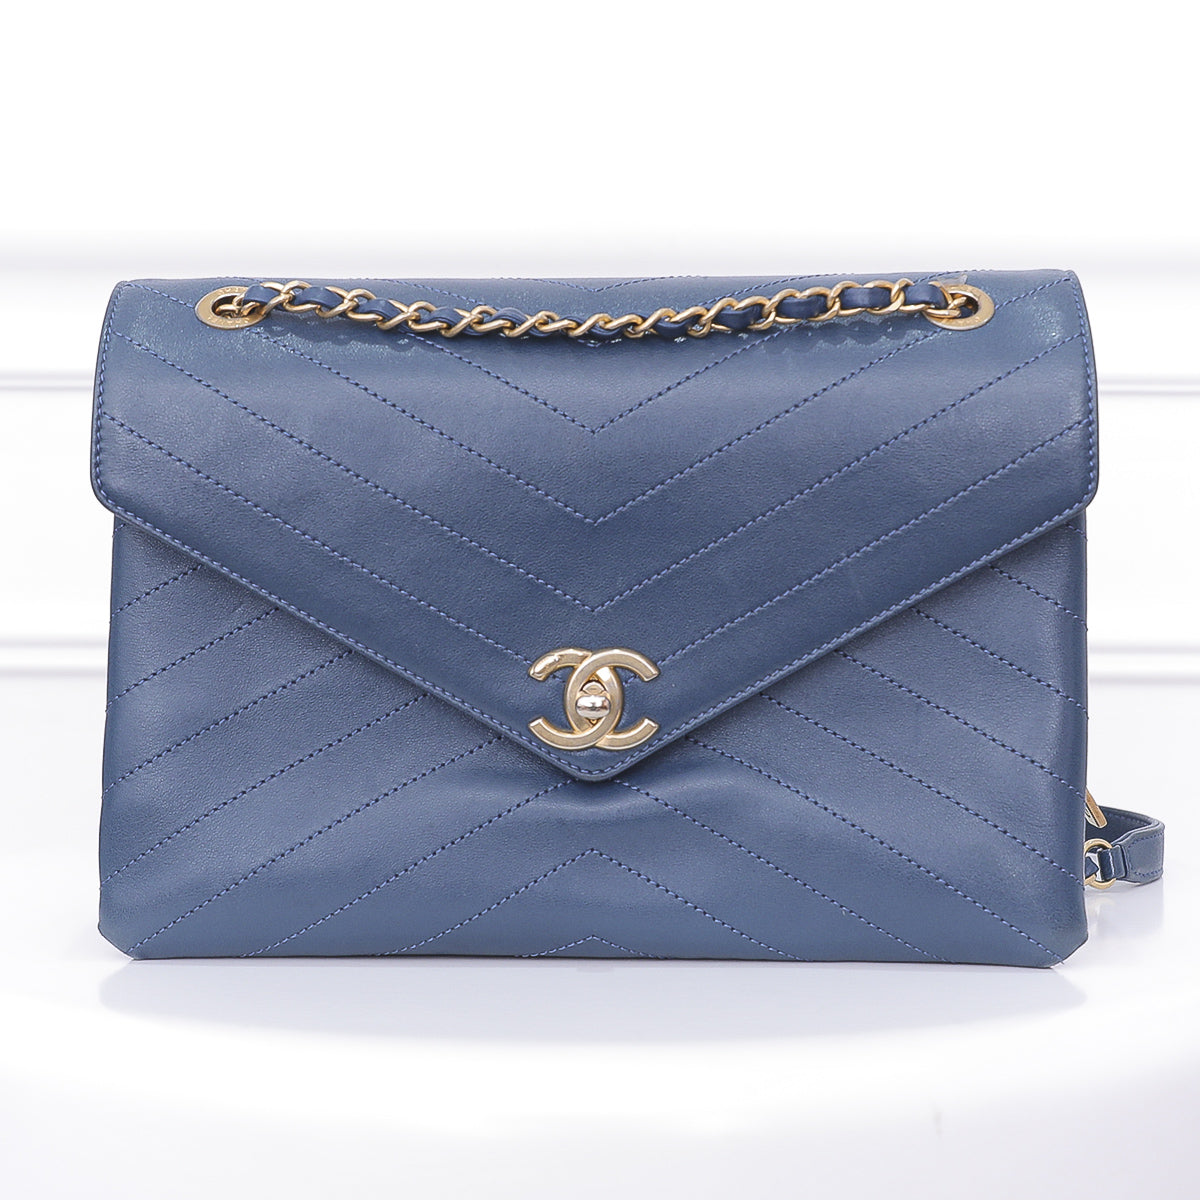 Chanel Blue Envelope Flap Bag